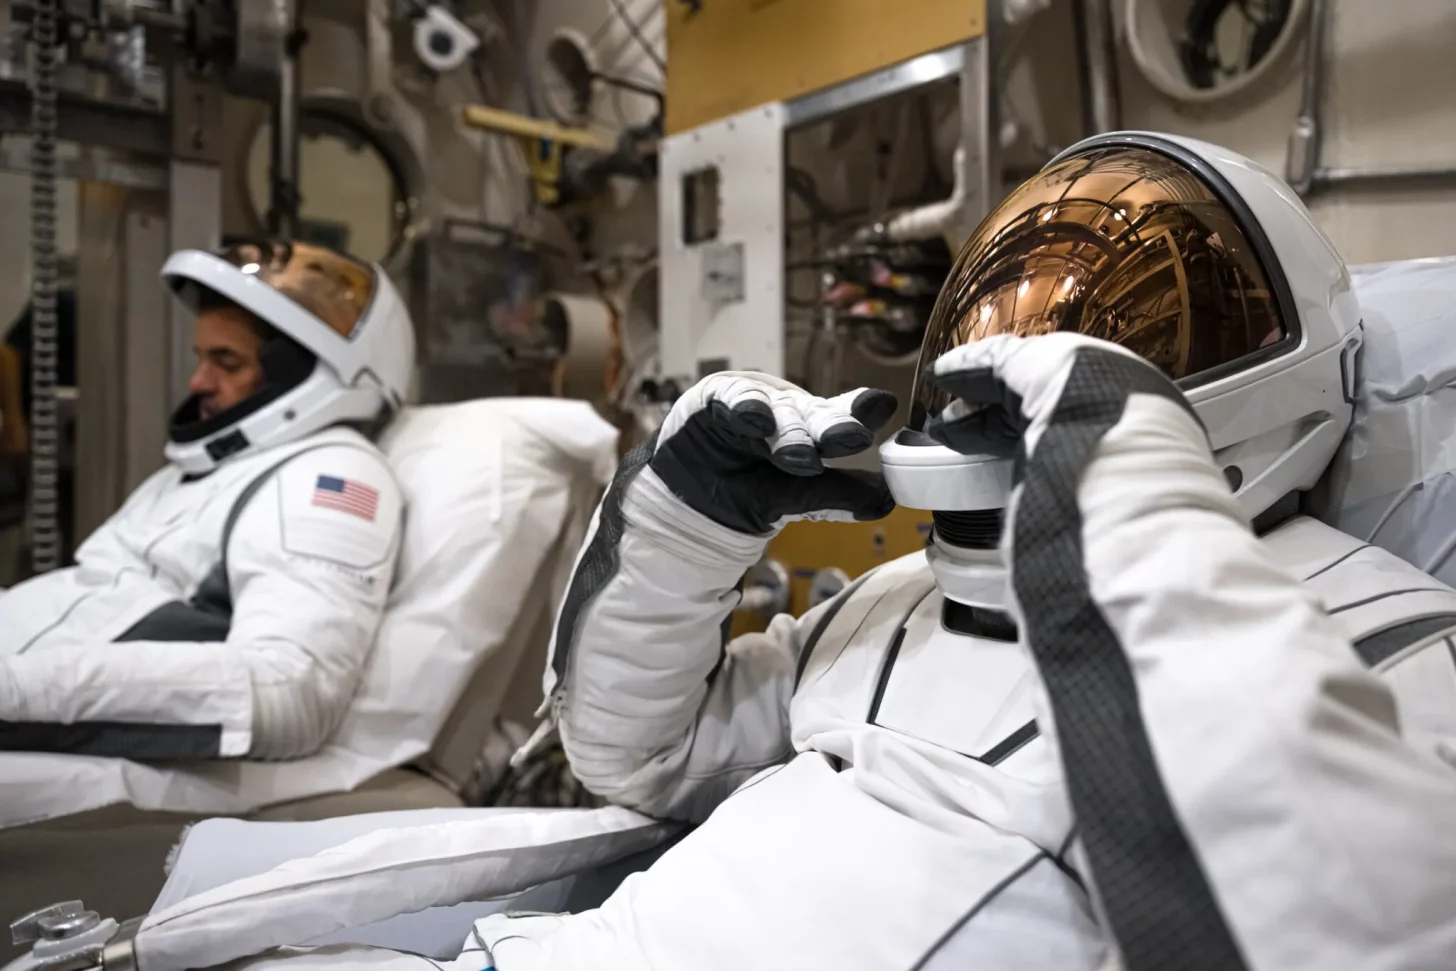 SpaceX’in İlk Uzay Yürüyüşü Kıyafetleri Testleri Başarıyla Geçti